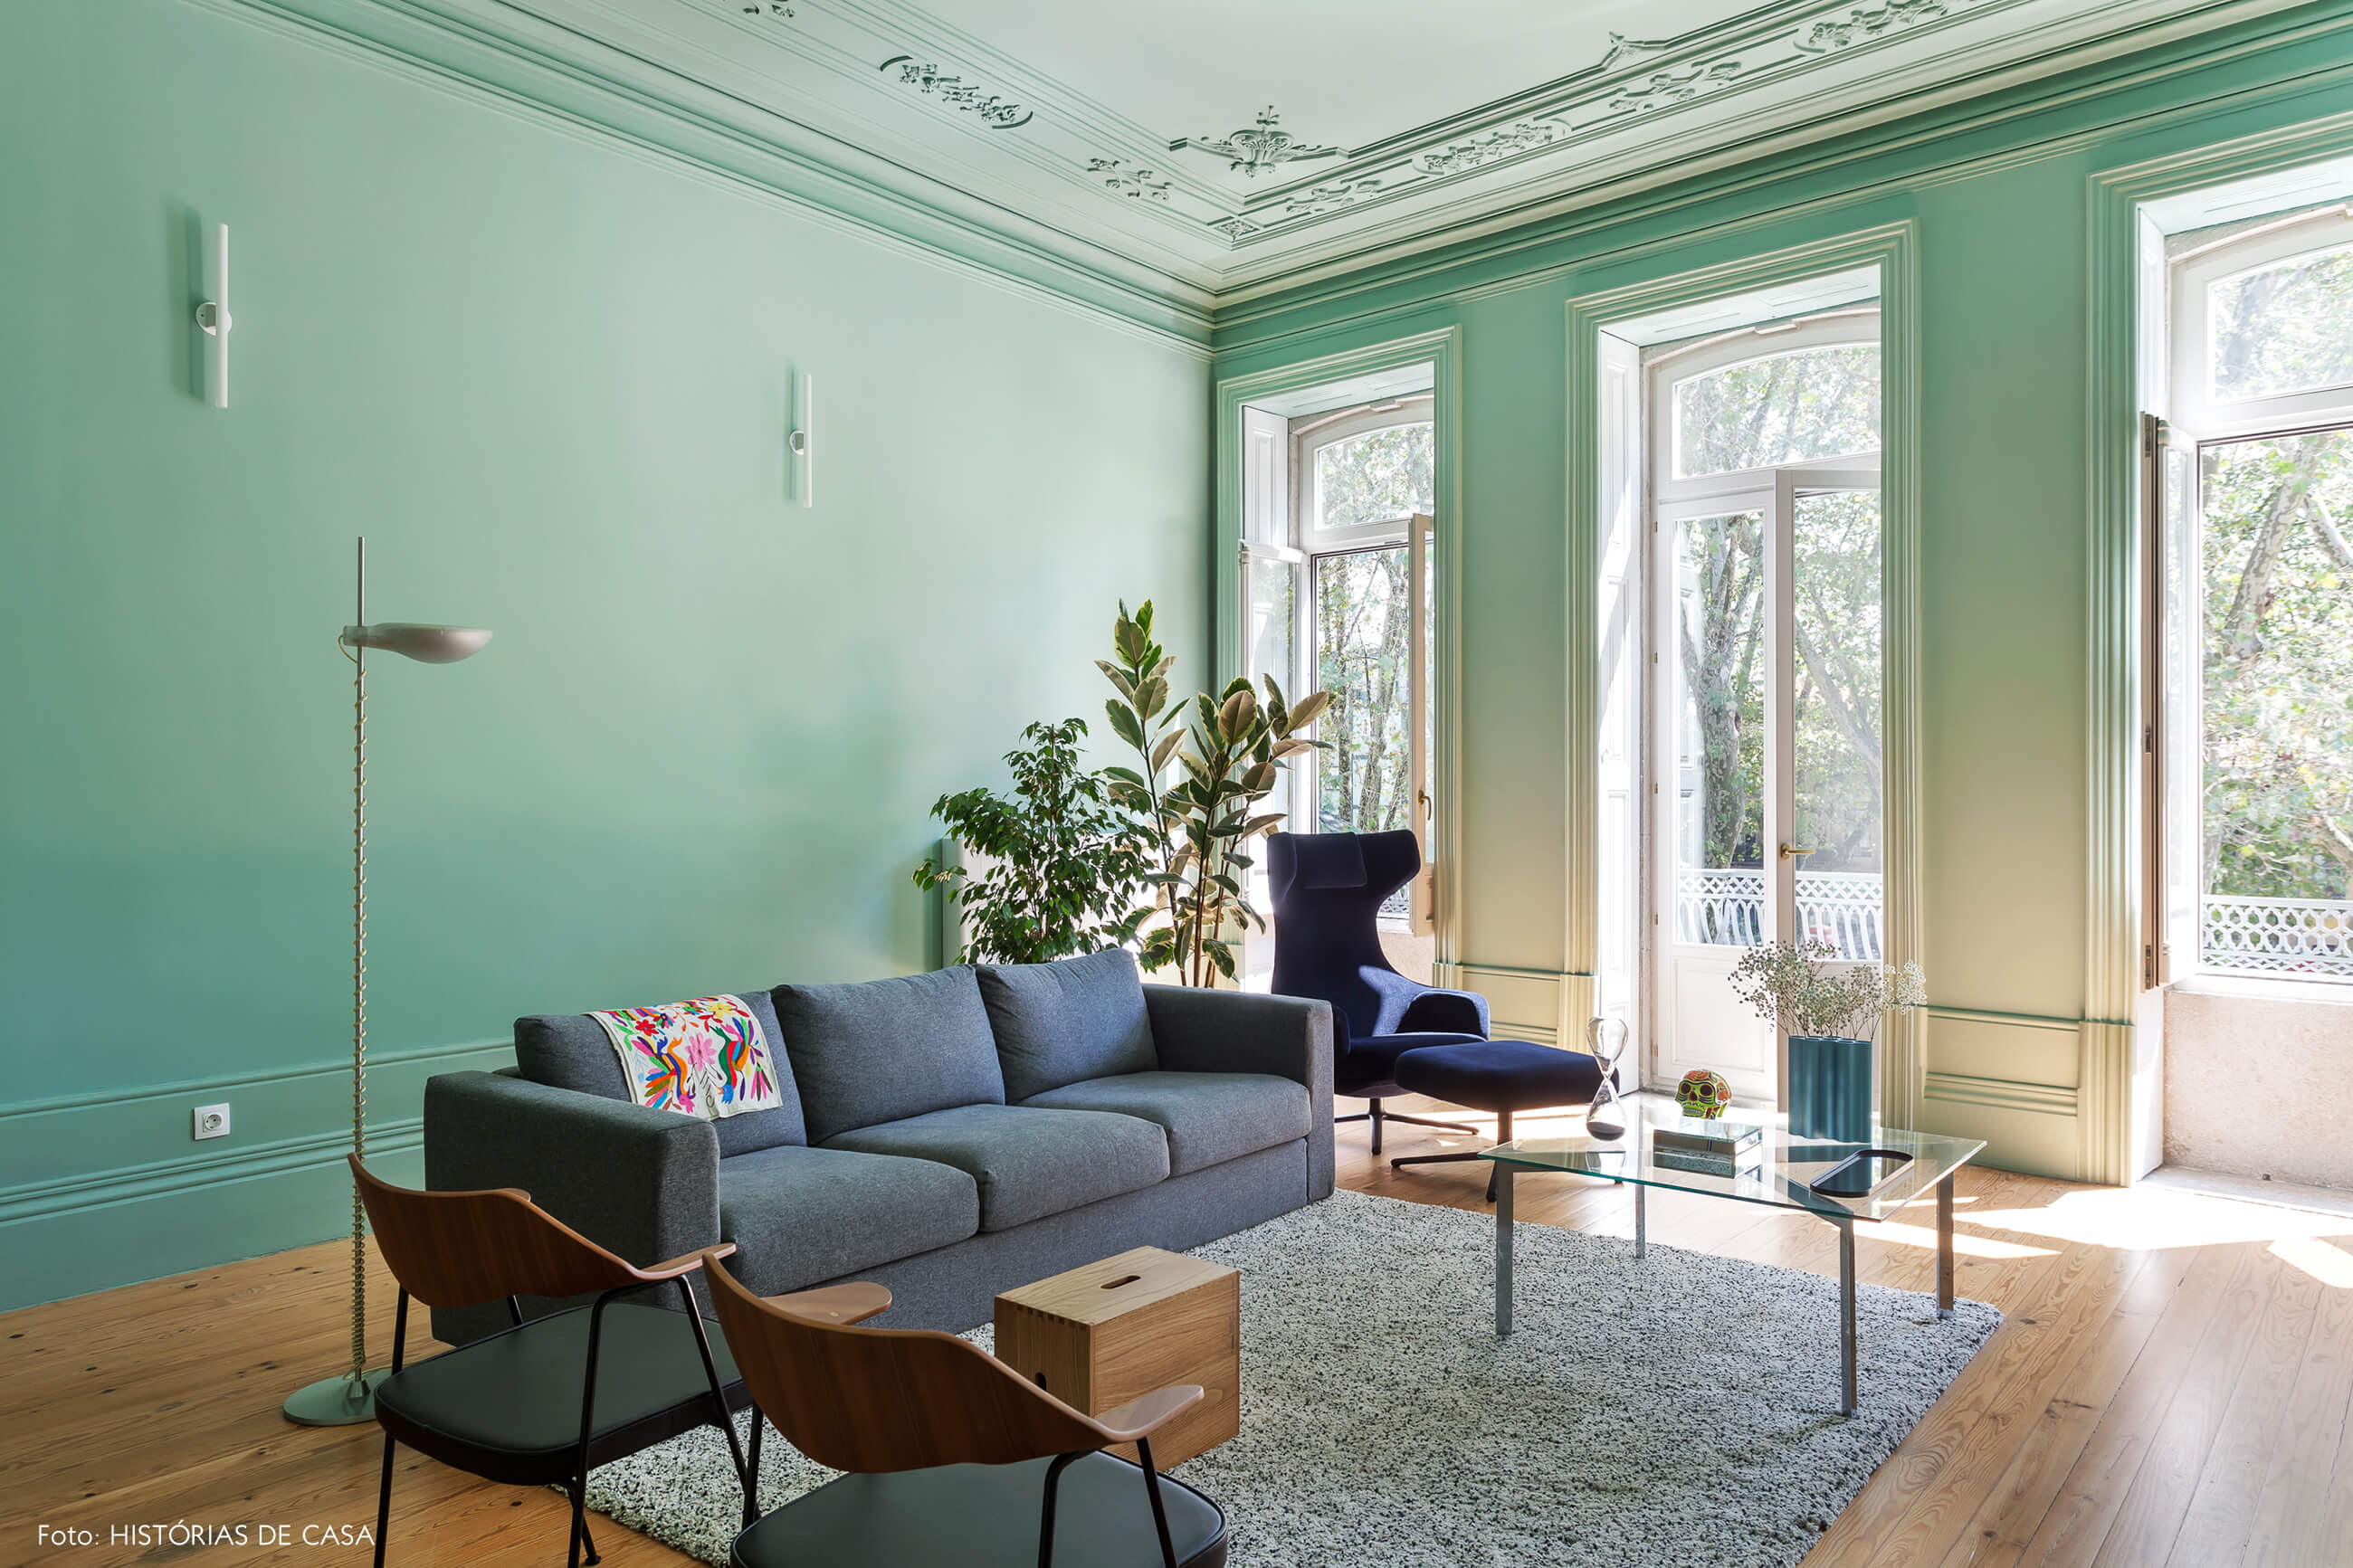 Apartamento com sala pintada de verde